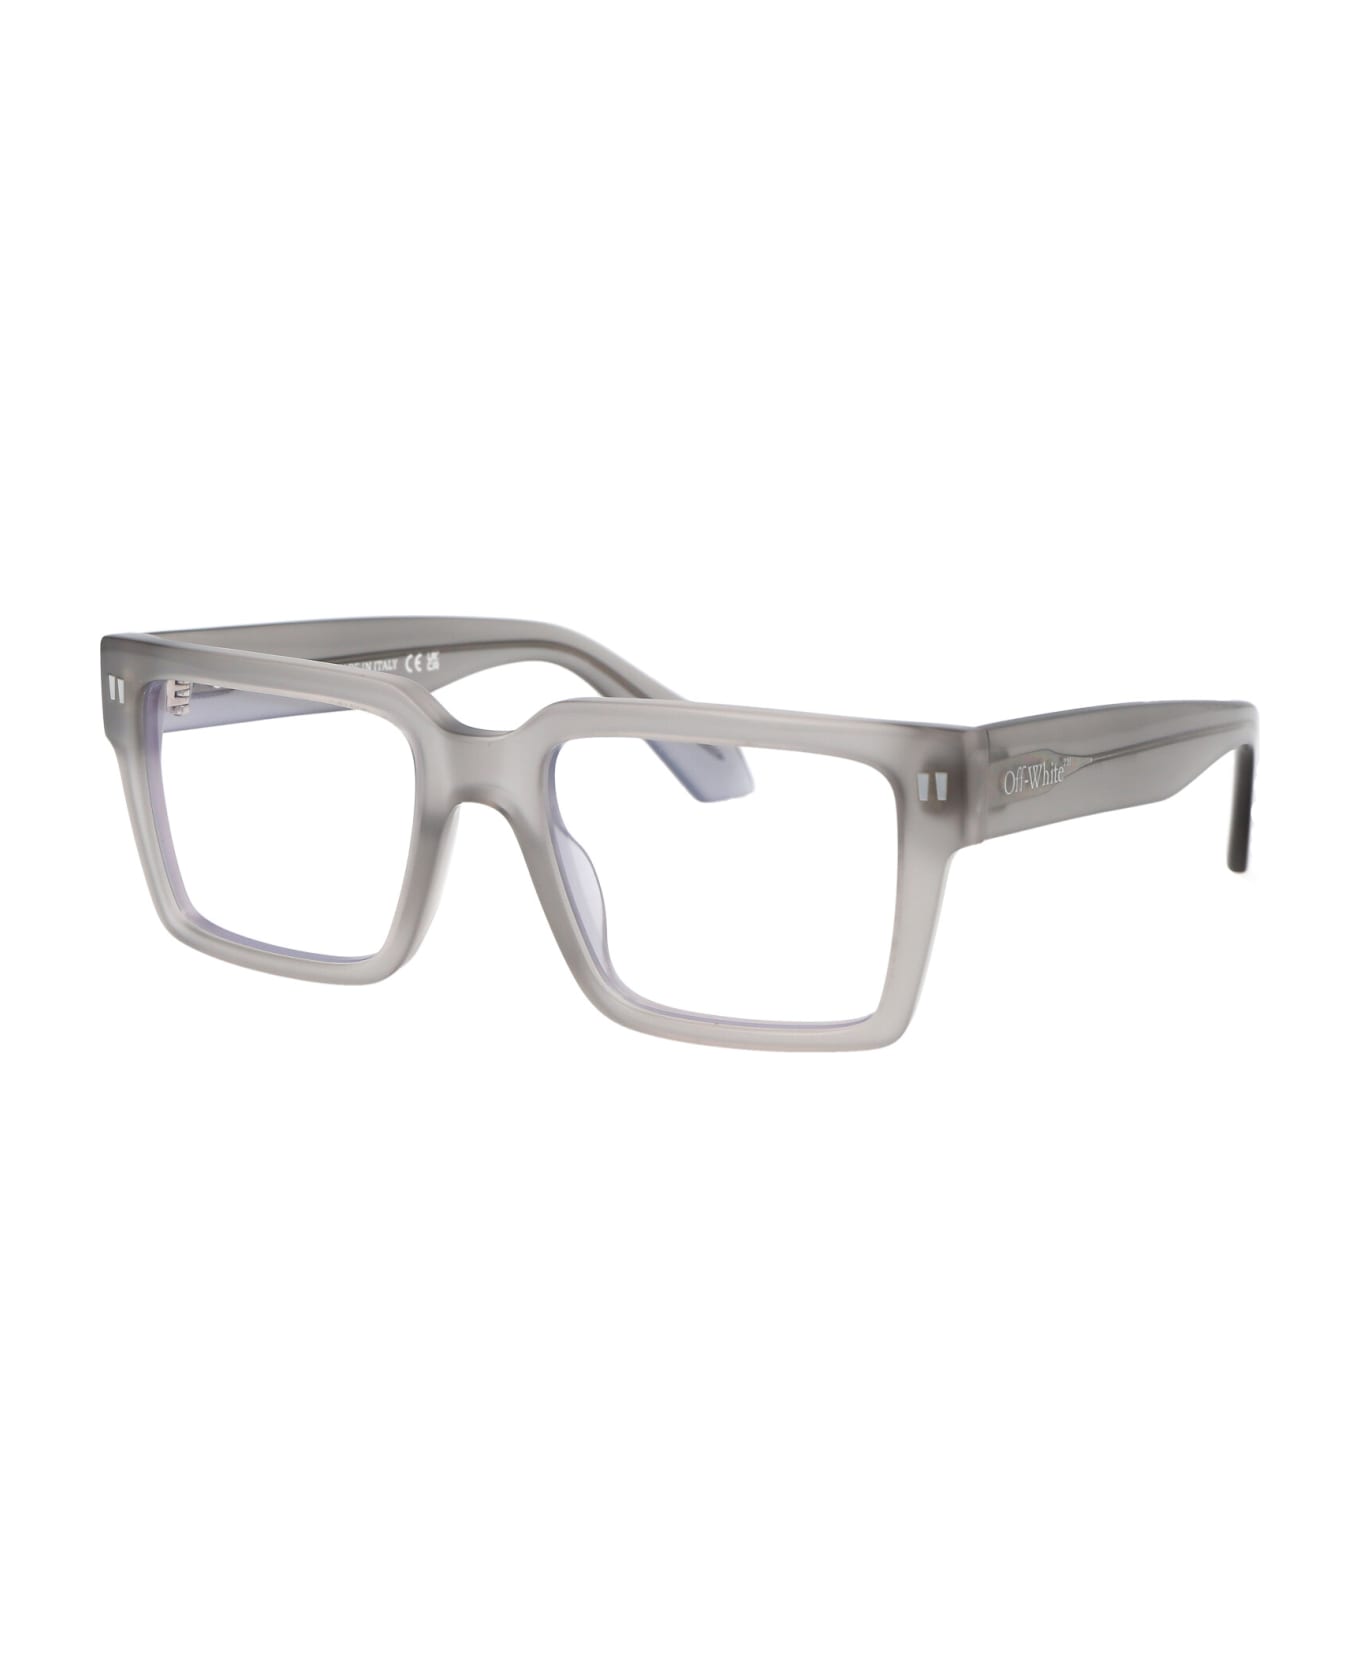 Off-White Optical Style 54 Glasses - 0900 GREY  アイウェア